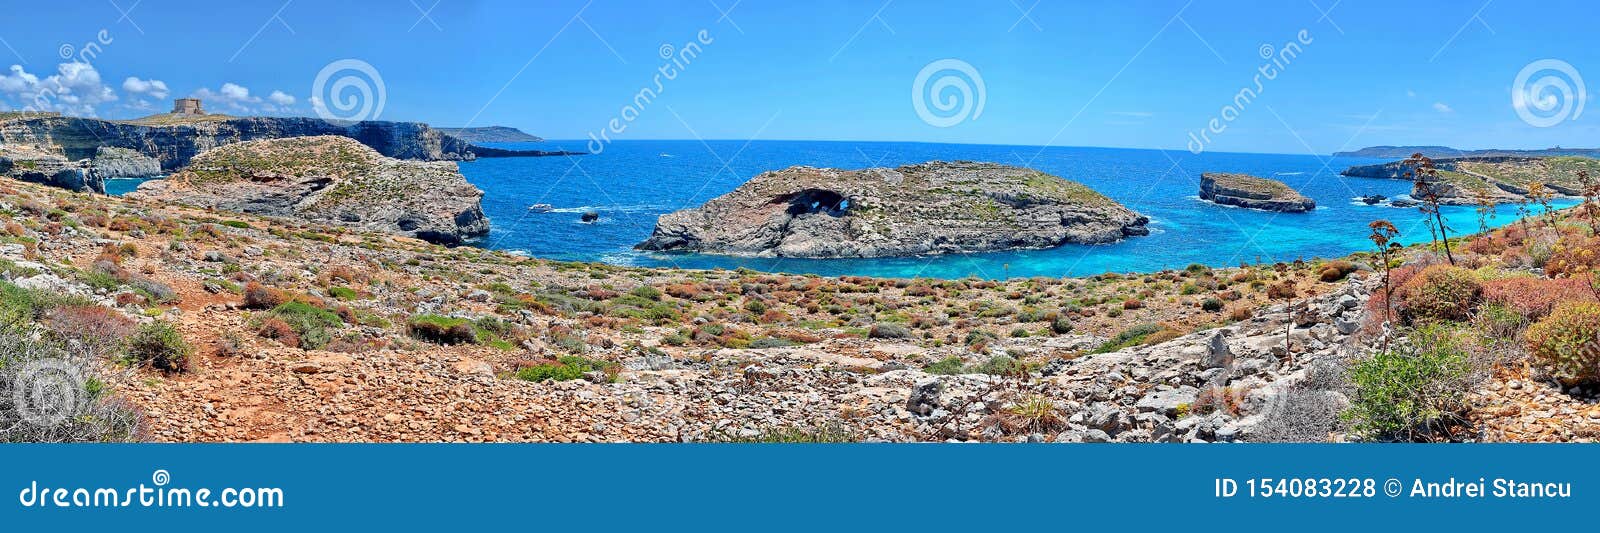 malta coast blue lagoon in comino island, malta